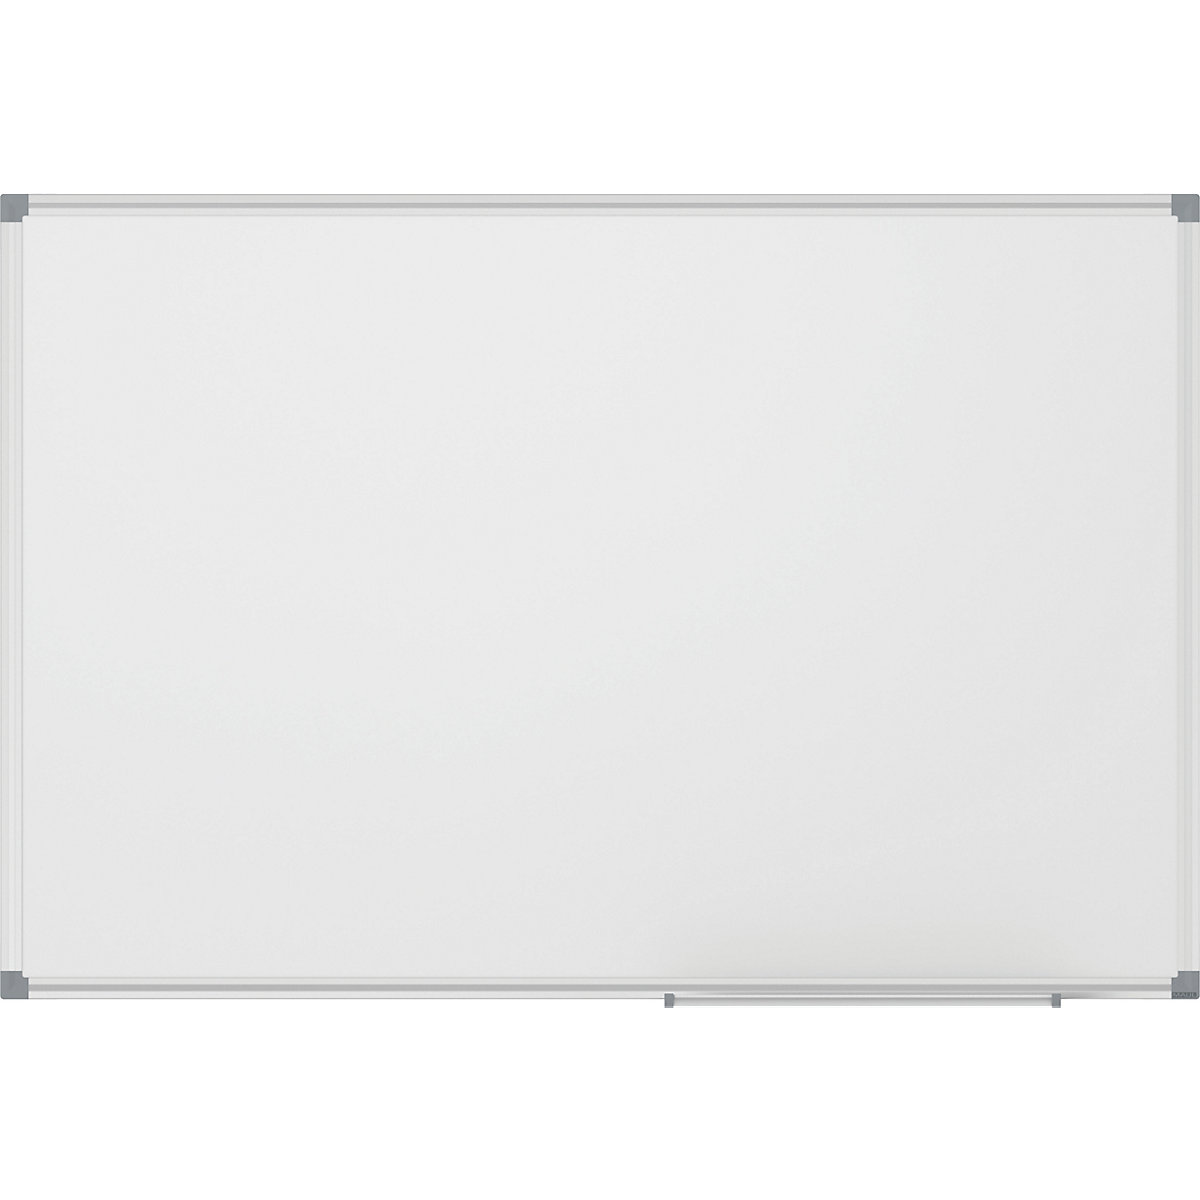 MAULstandard whiteboard, white - MAUL